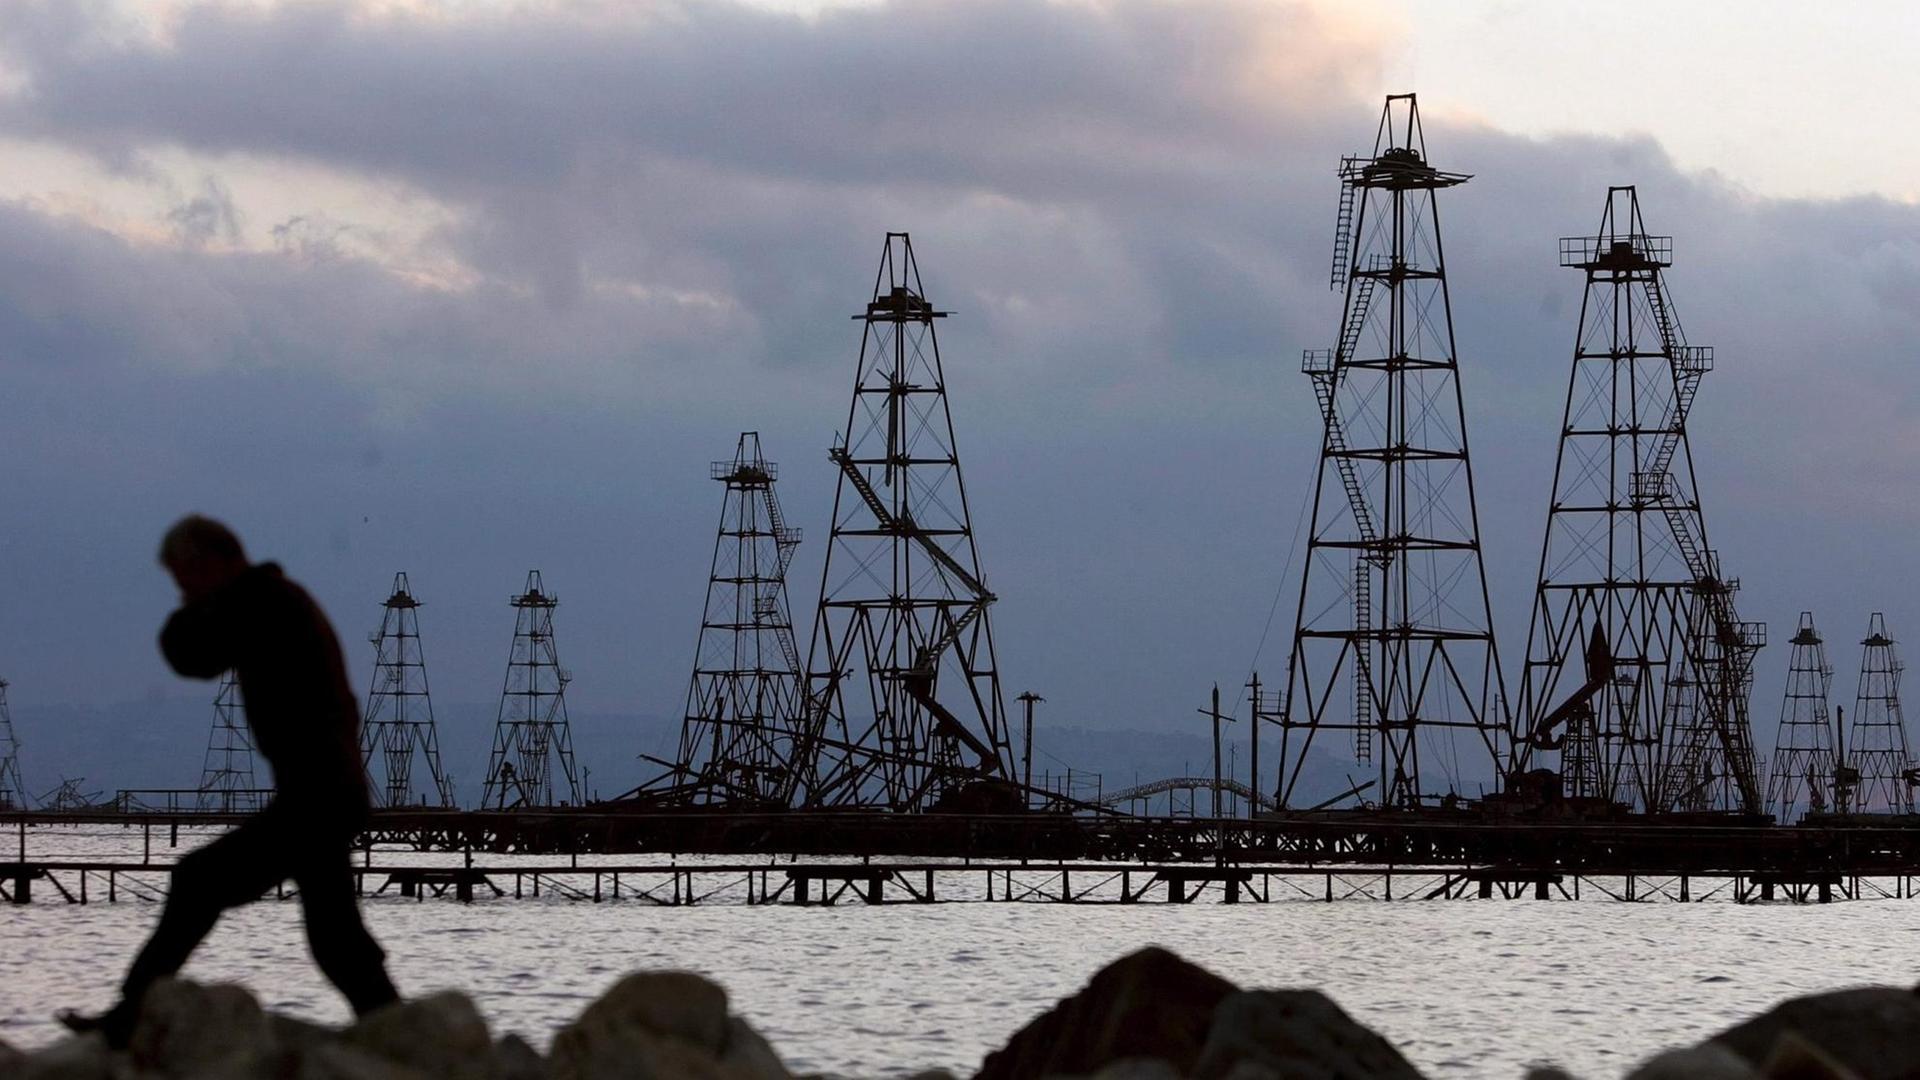 Ölbohrtürme im Kaspischen Meer in der Abenddämmerung. Davor geht am Ufer ein Mann entlang